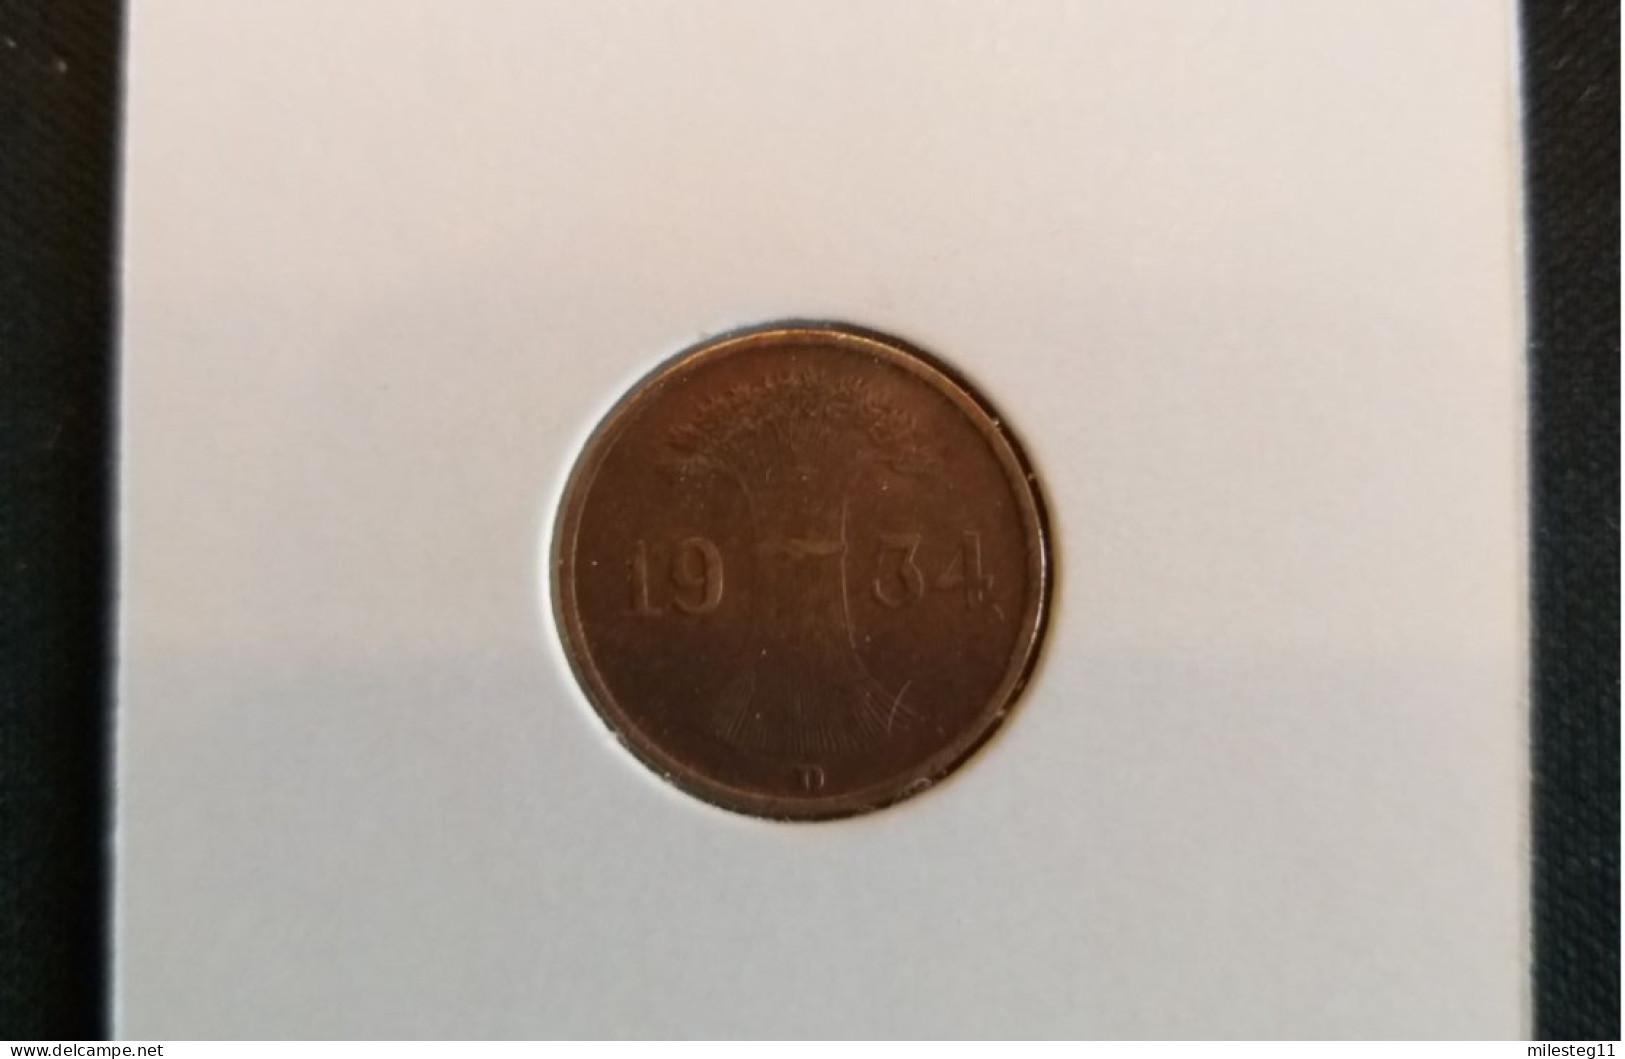 Pièce De 1 Reichspfennig De 1934D - 1 Reichspfennig